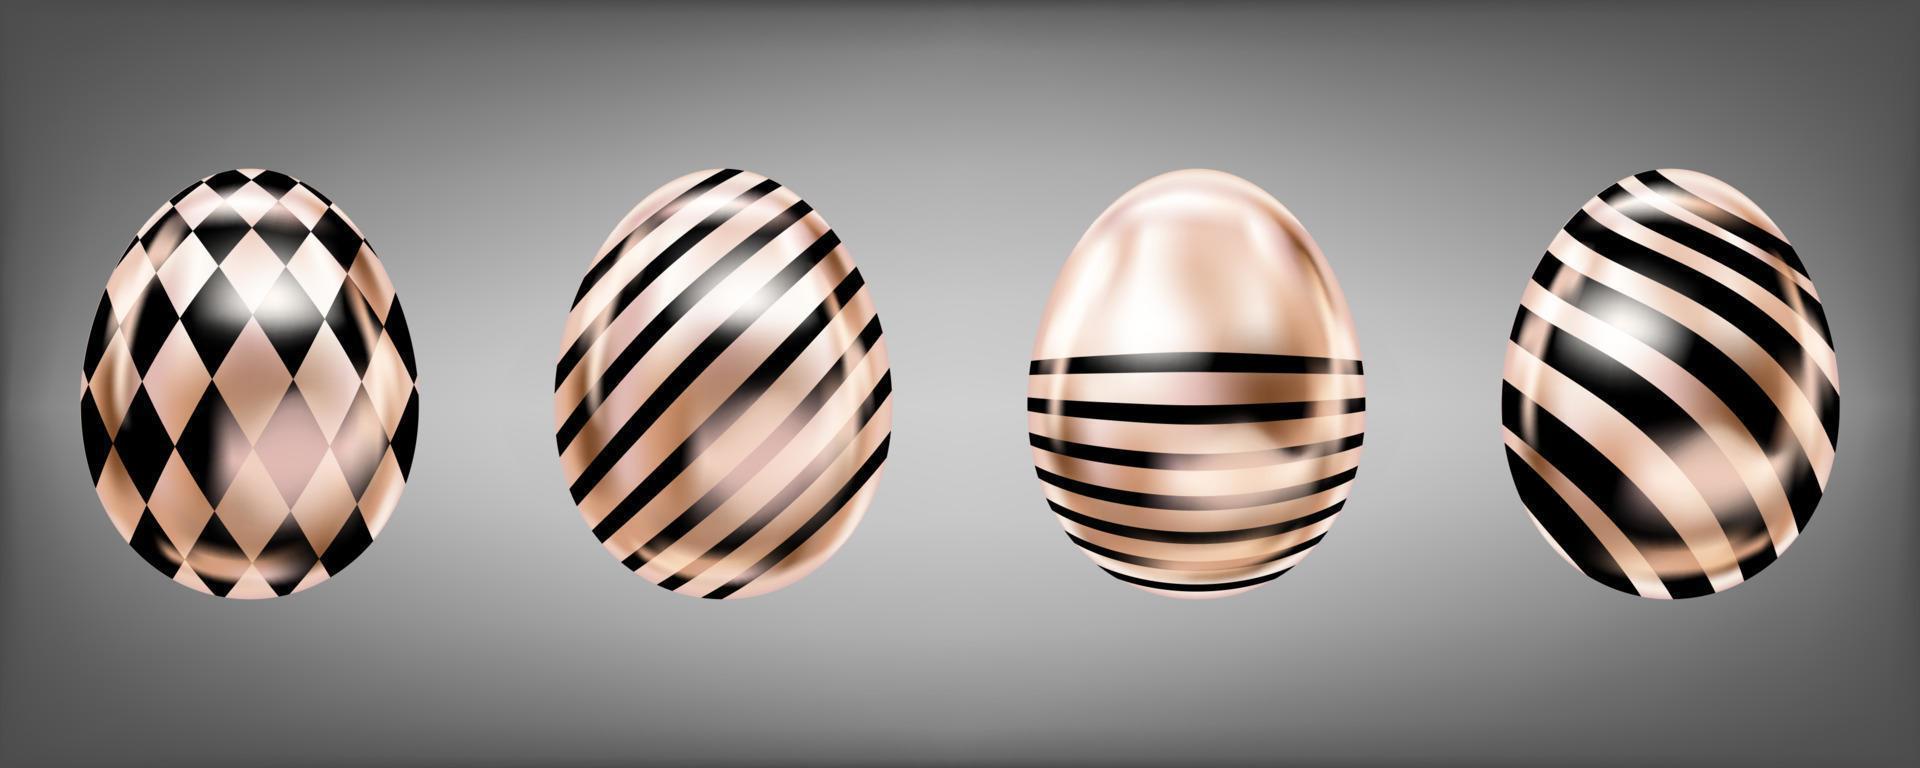 Metallische Eier mit vier Glanz in rosa Farbe mit schwarzem Domino und Streifen. isolierte objekte für ostern vektor